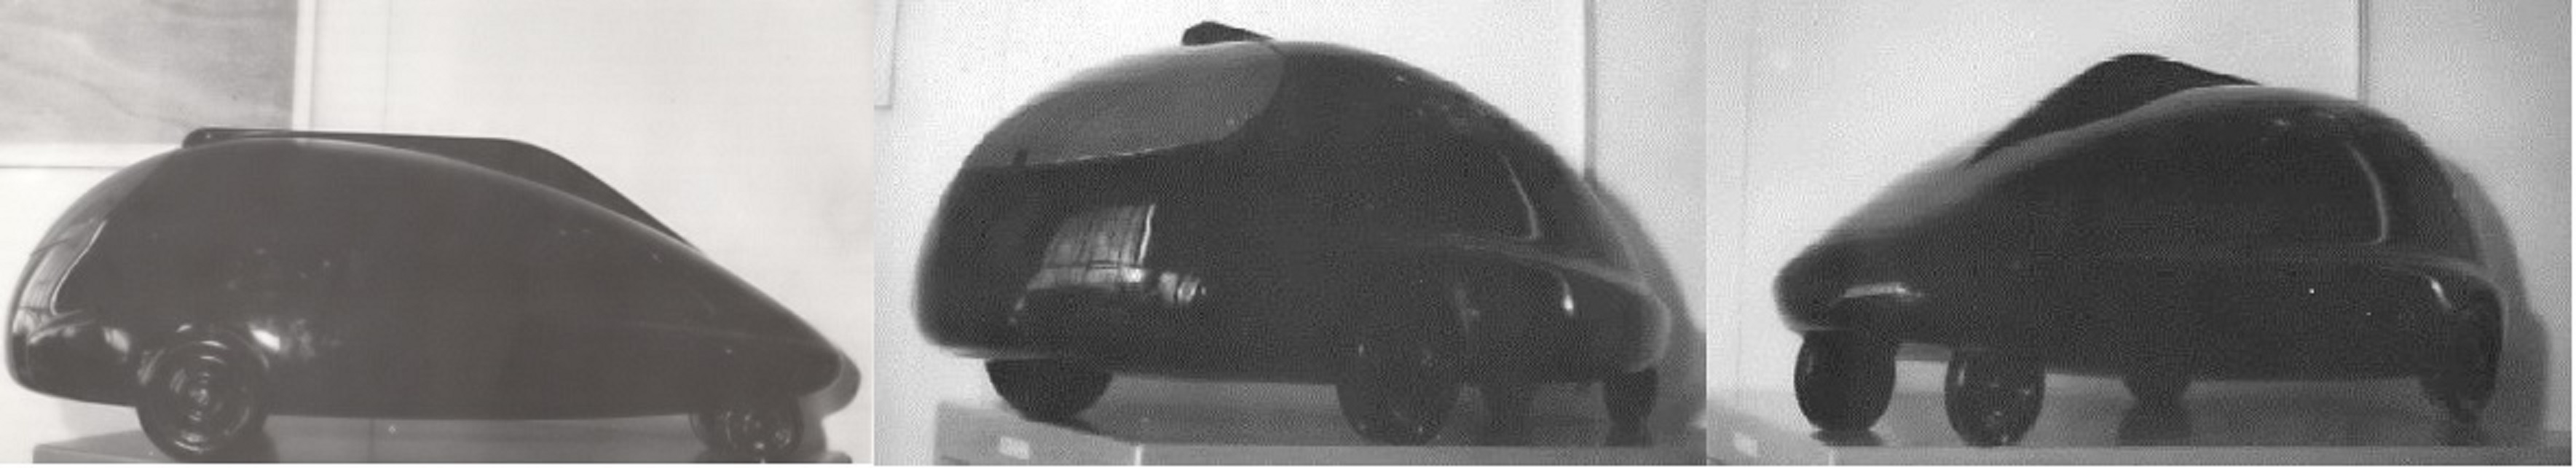 Esta maqueta del C8 fue descubierta in un gr anero de la Ferte-Vidame en los anos 80. Historia: Citroën Coccinelle